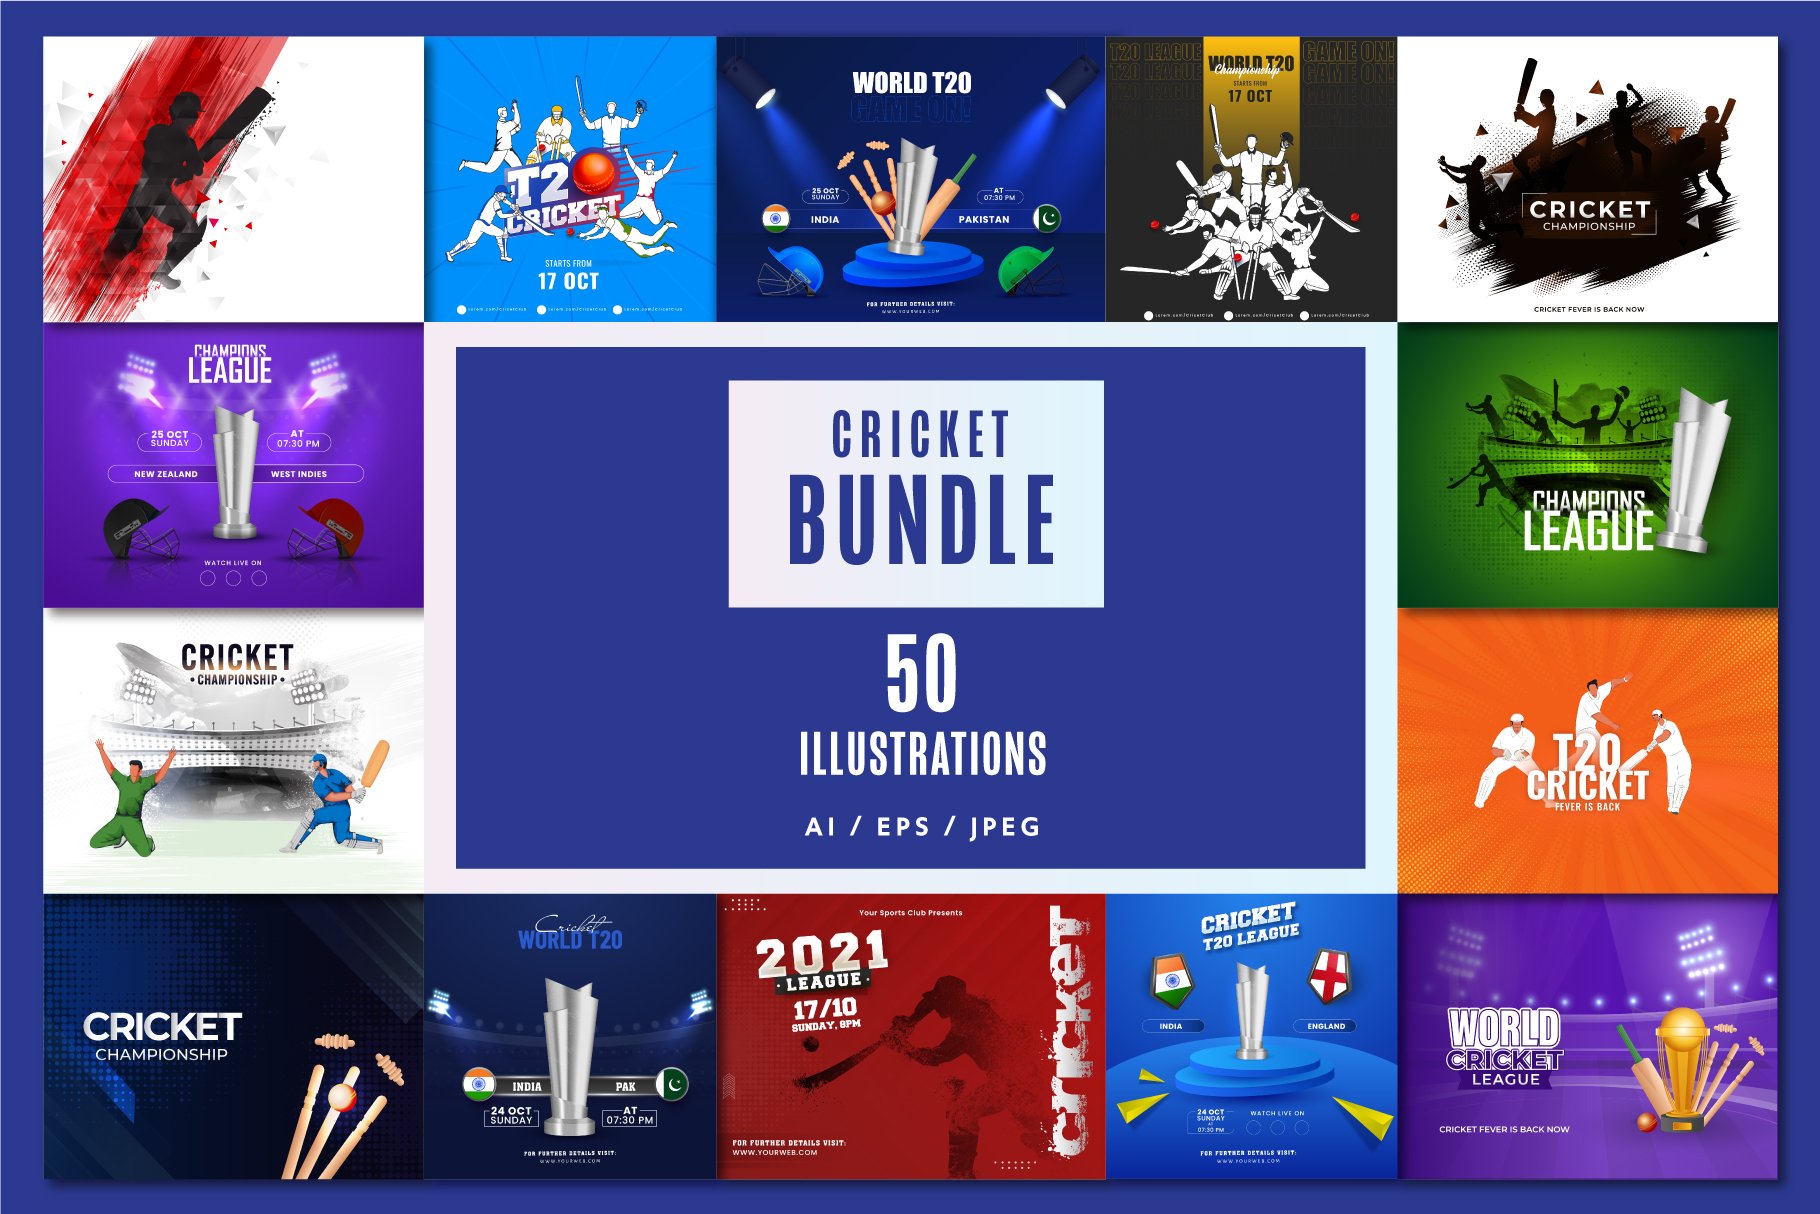 Cricket 2021 Bundle Vol-1 cover image.